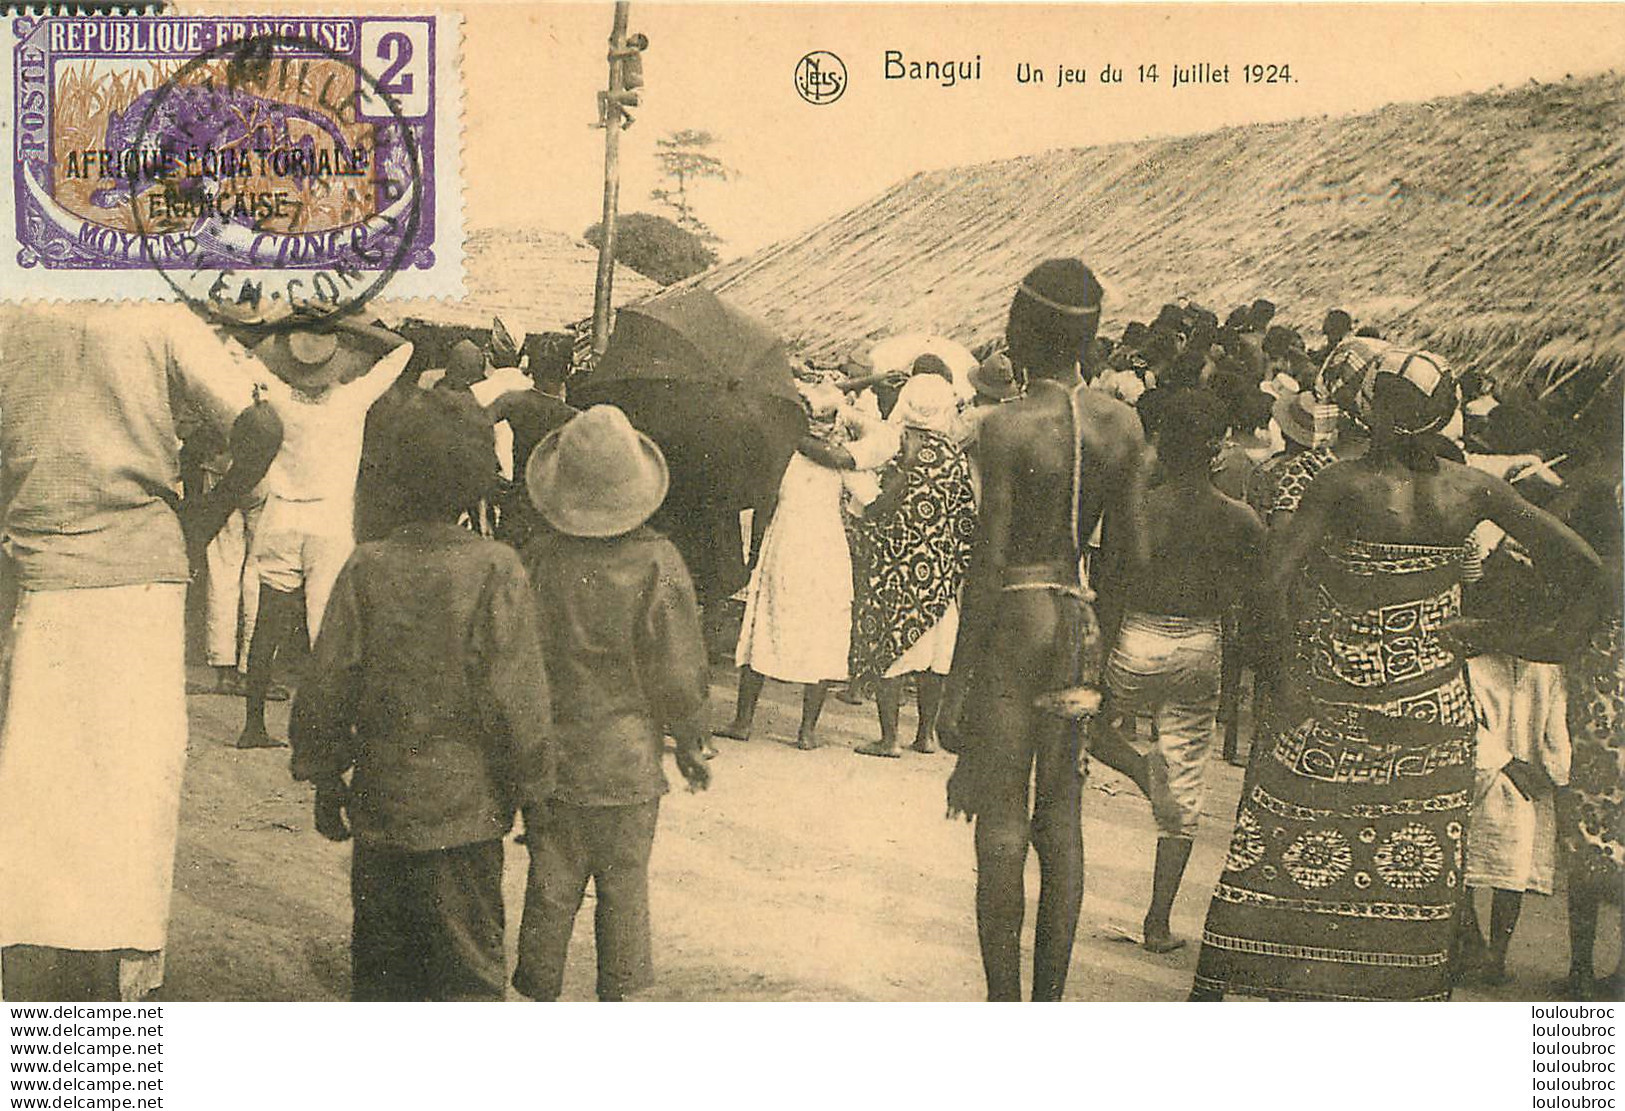 BANGUI UN JEU DU 14 JUILLET 1924  EDITION NELS - Centrafricaine (République)